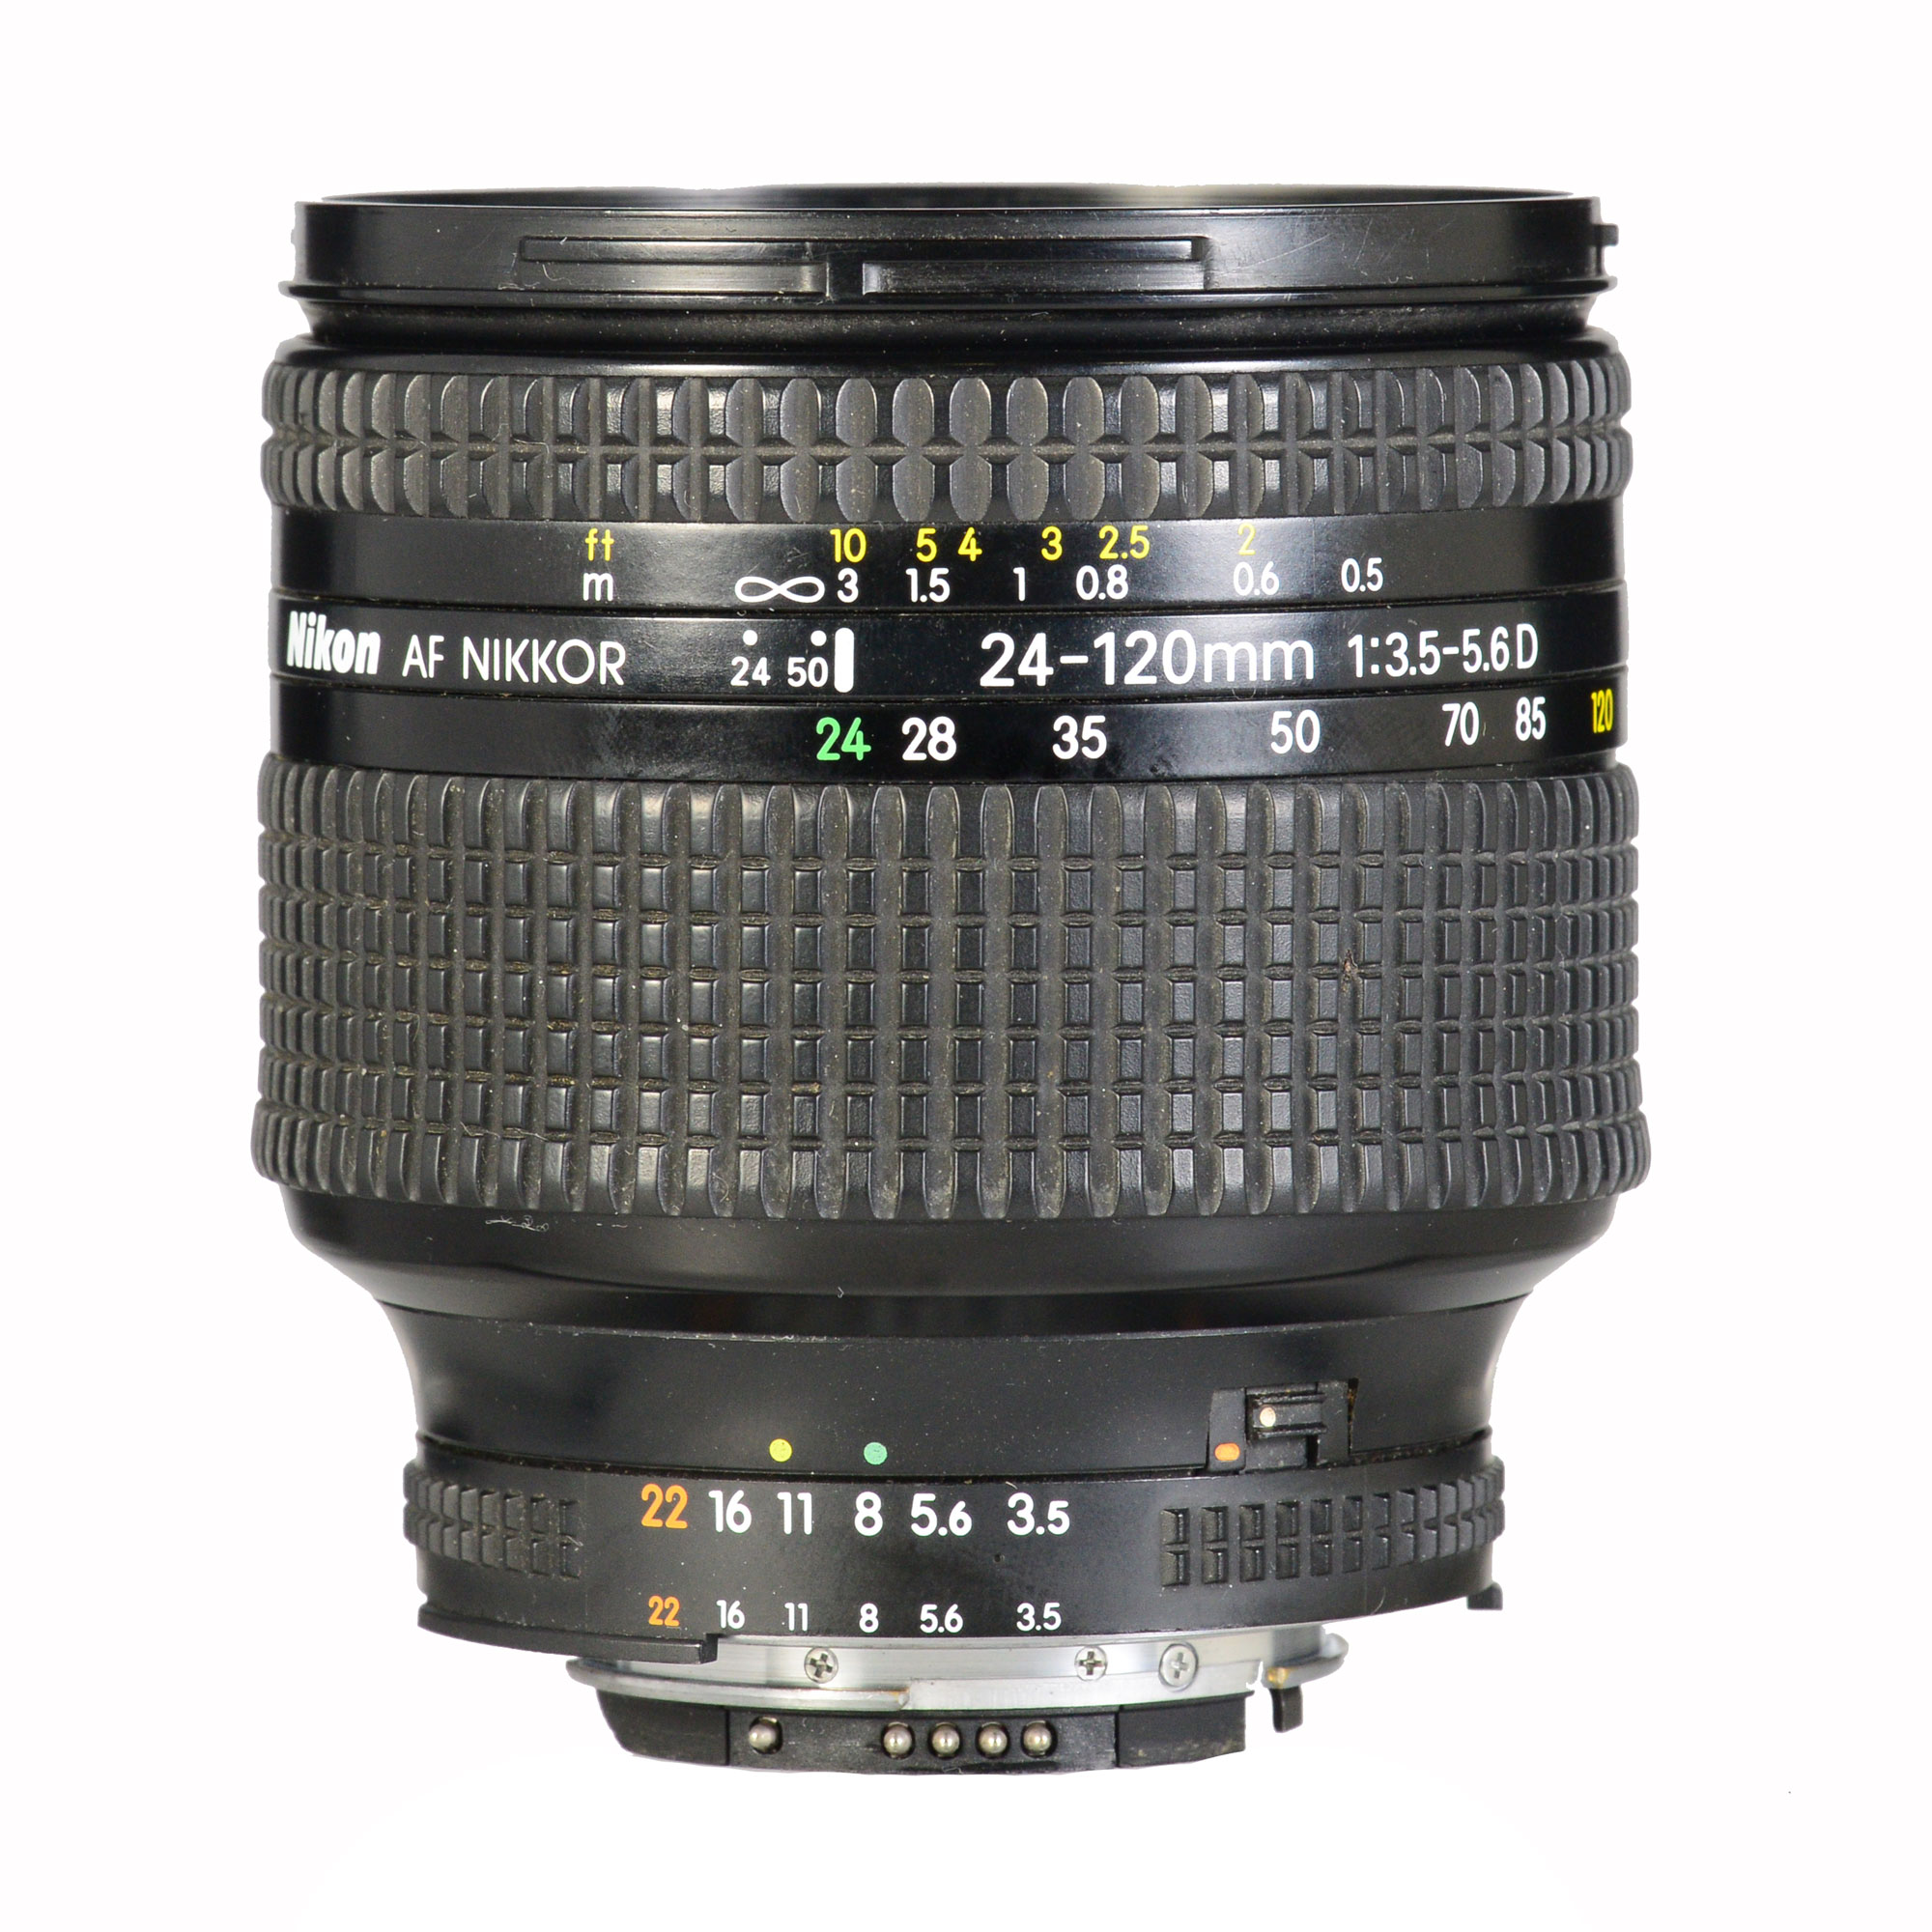 Nikon 24-120mm f/3.5-5.6D IF AF б/у